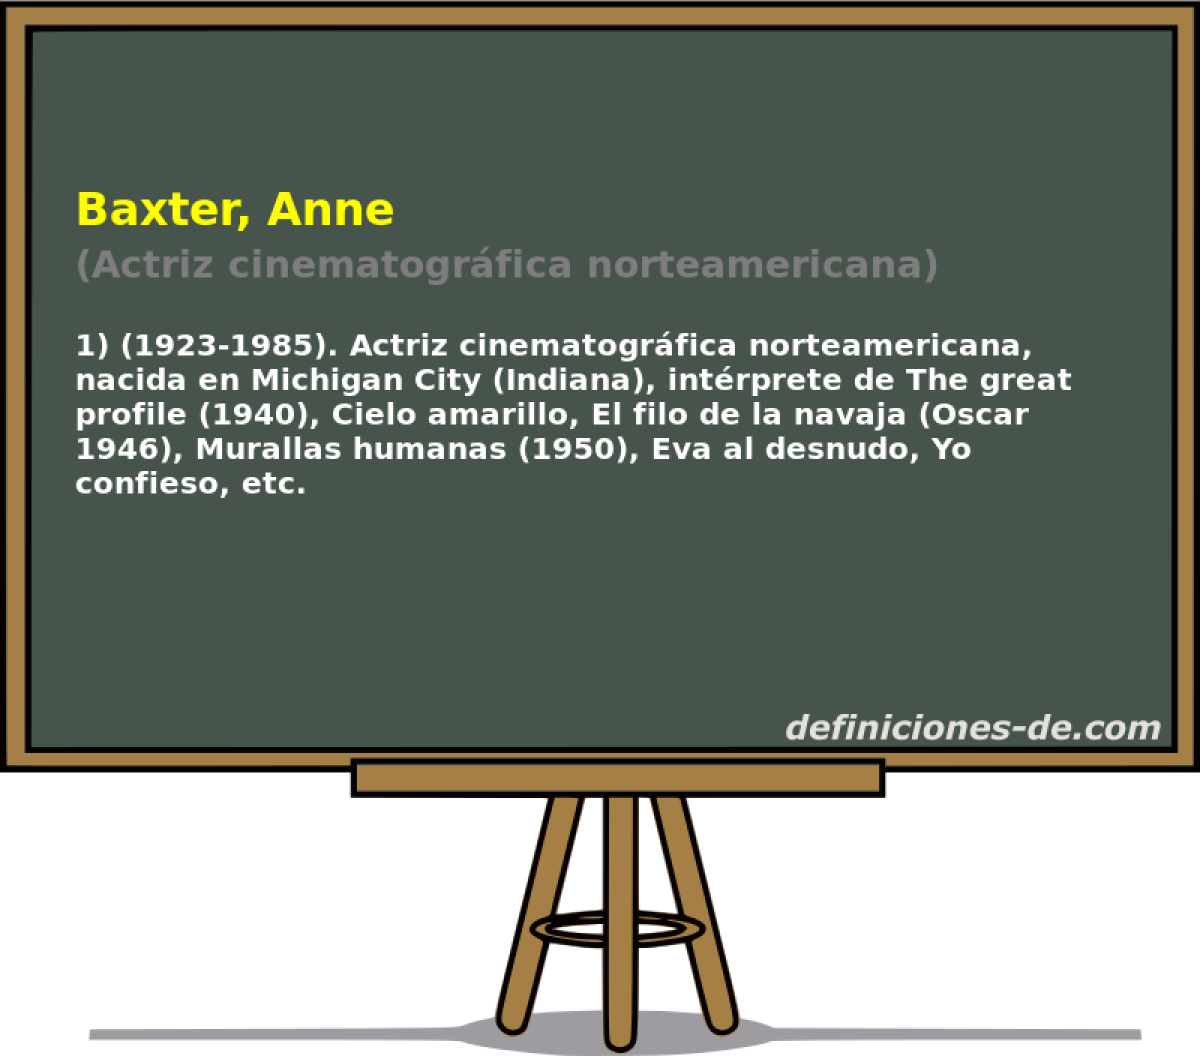 Baxter, Anne (Actriz cinematogrfica norteamericana)